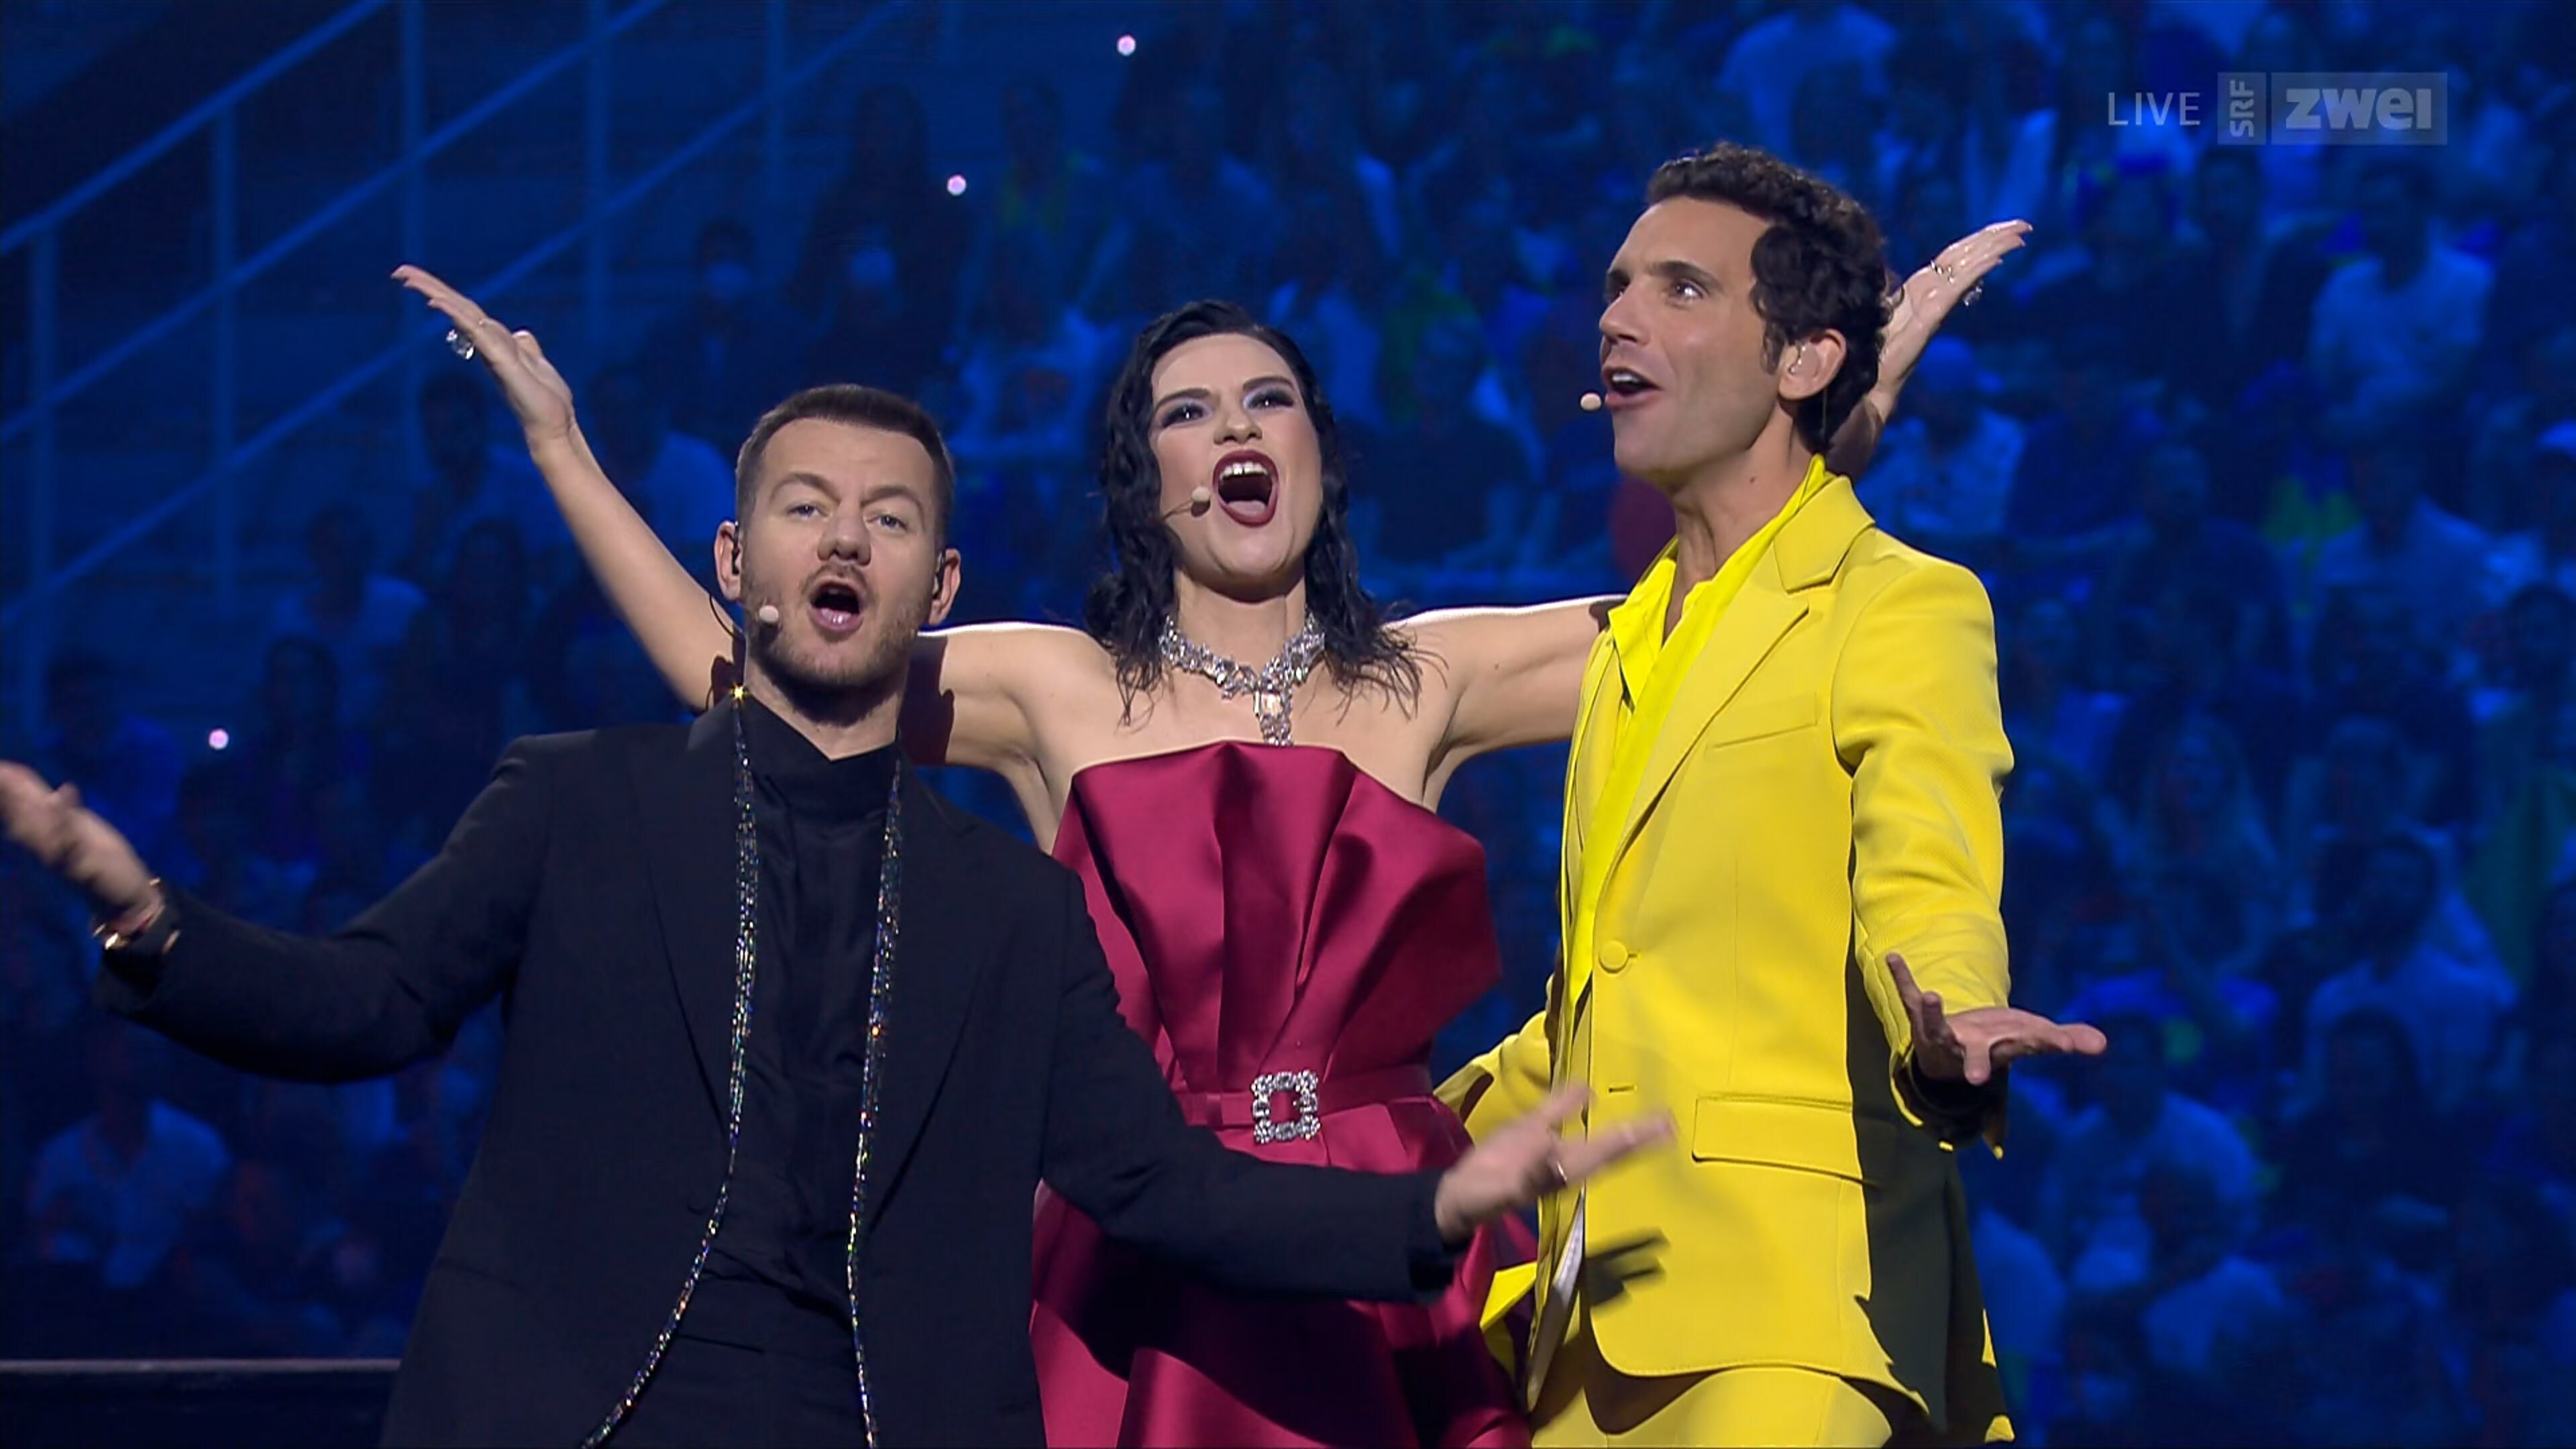 Eurovision 2022 - Semi-Final 2 UHDTV H265 2160p DD5.1-ilya2129.mkv_snapshot_00.08.42.520.jpg